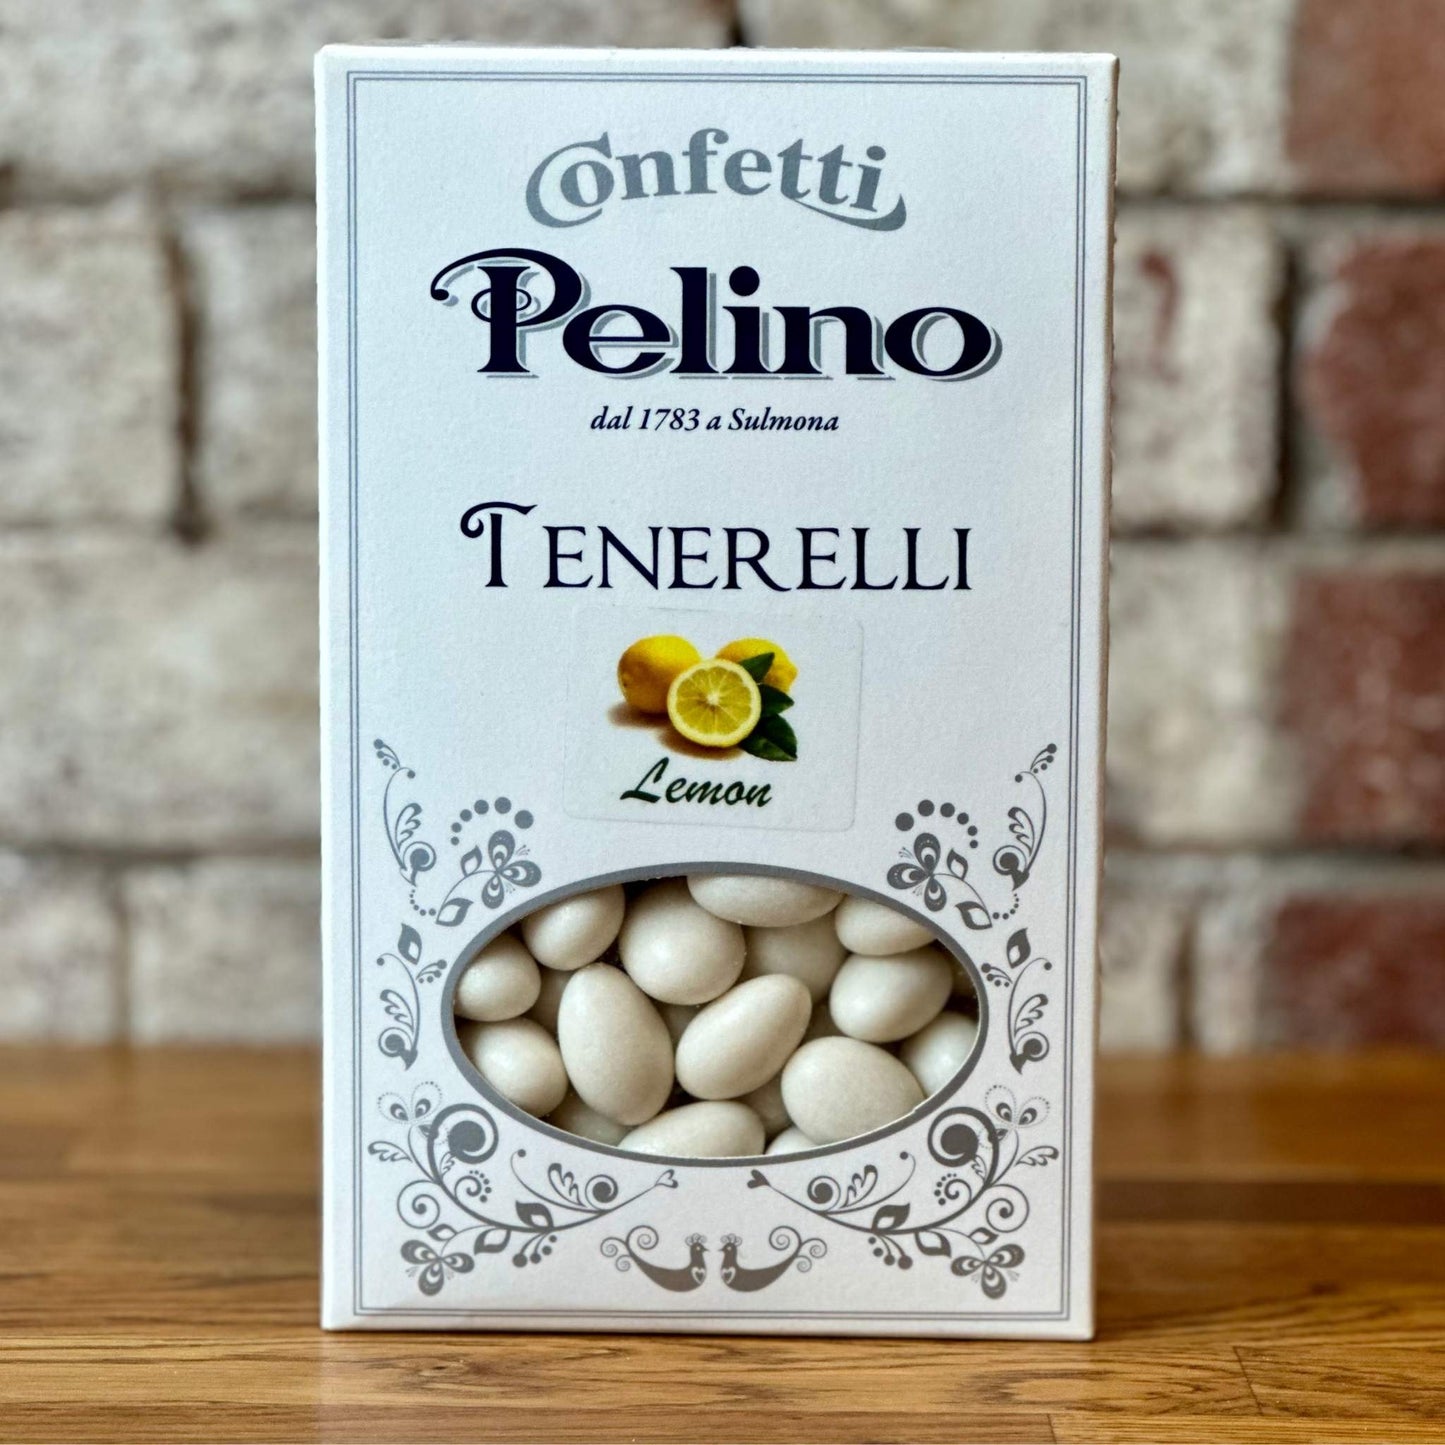 Lemon Tenerelli Pelino 500g - Confetti